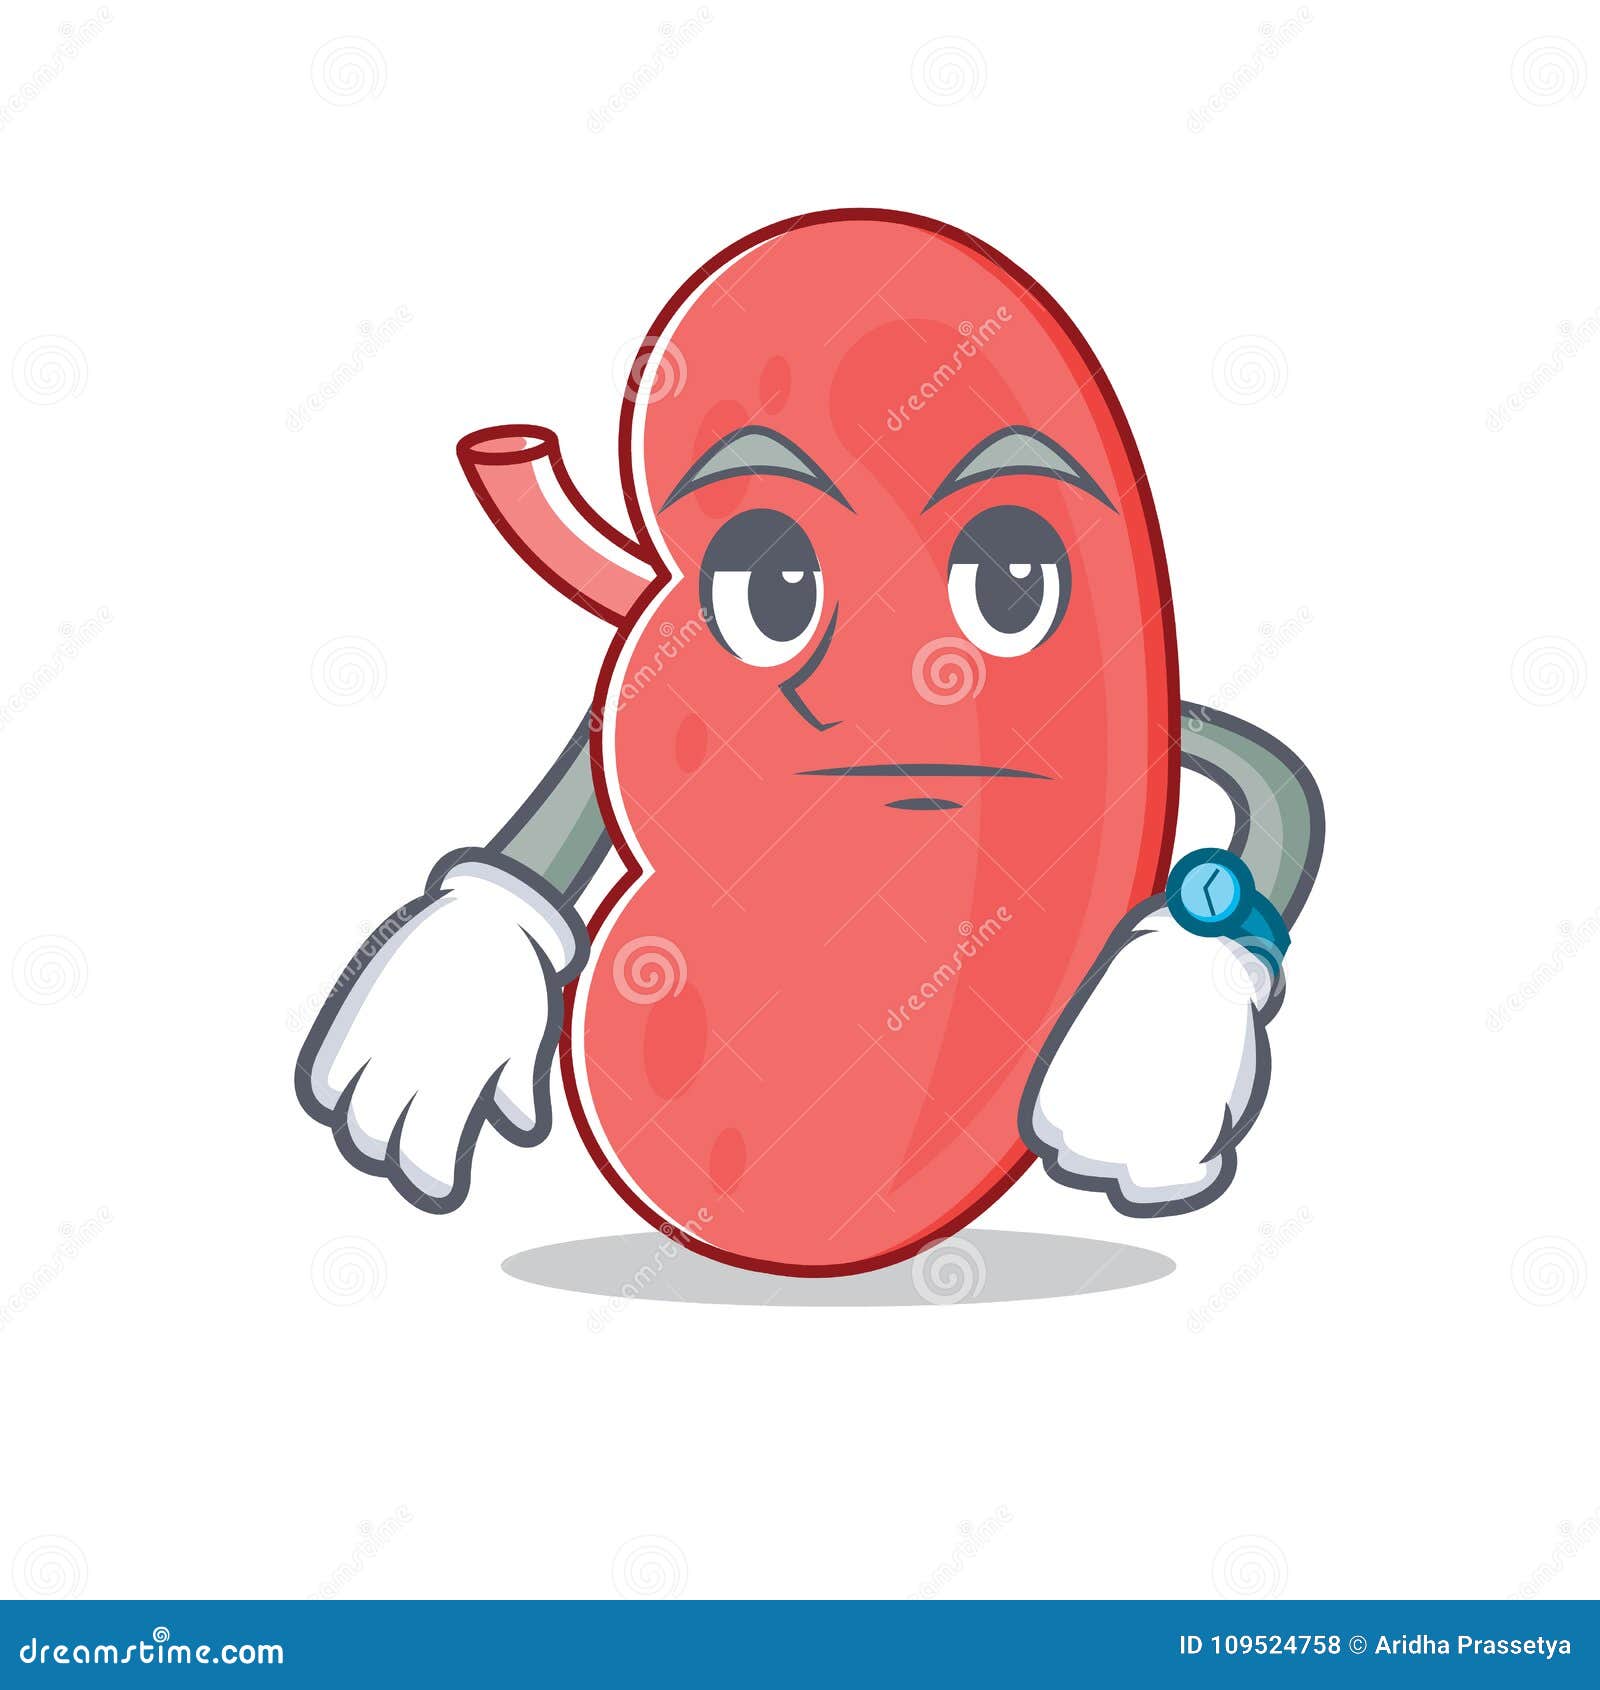 Waiting Kidney Mascot Cartoon Style Stock Vector - Illustration of ...